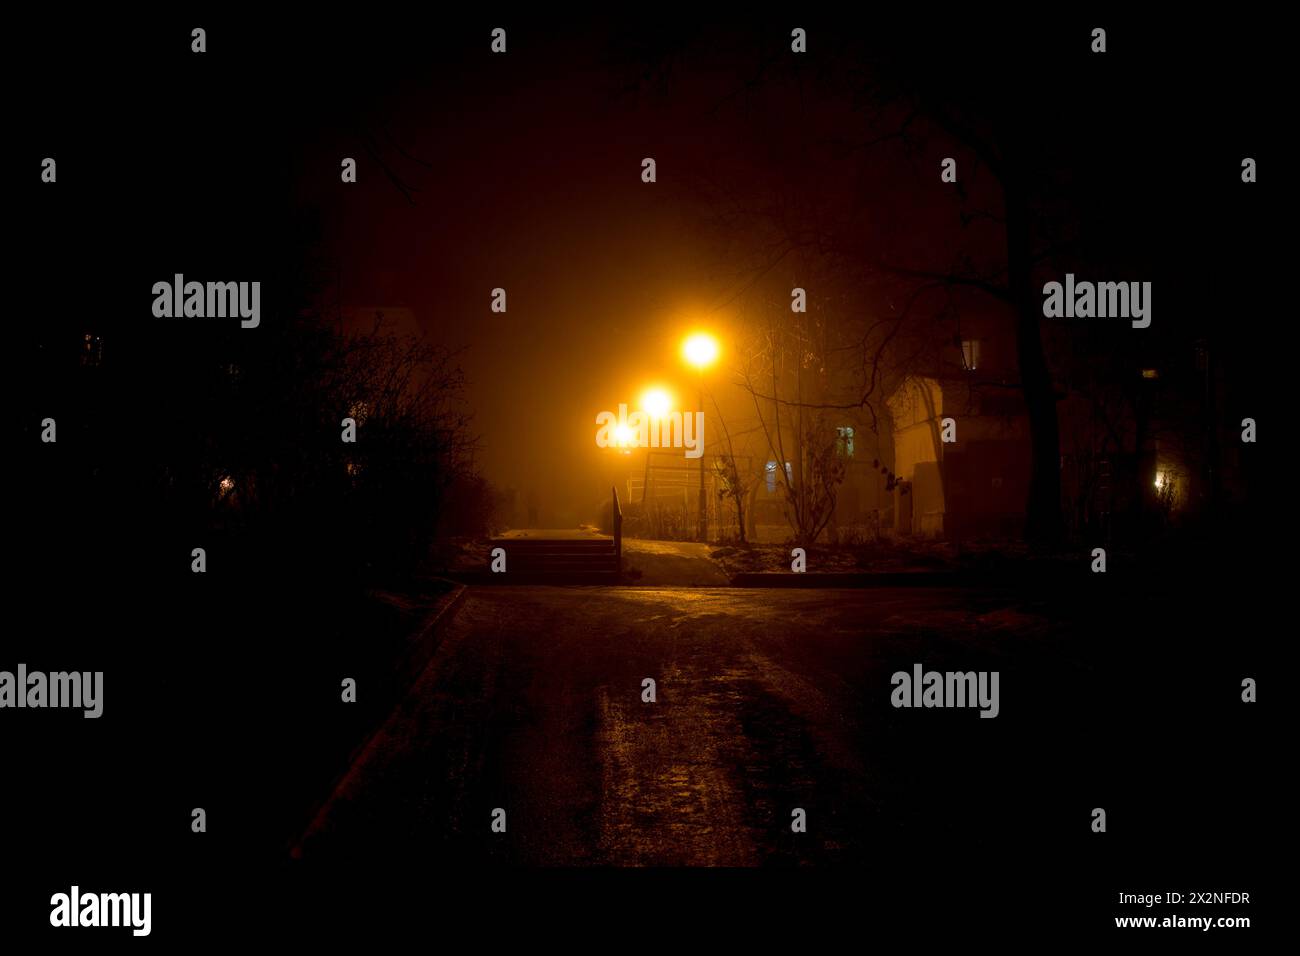 Illuminazione soffusa dai lampioni stradali, dal cortile urbano, dalla fitta nebbia di notte Foto Stock